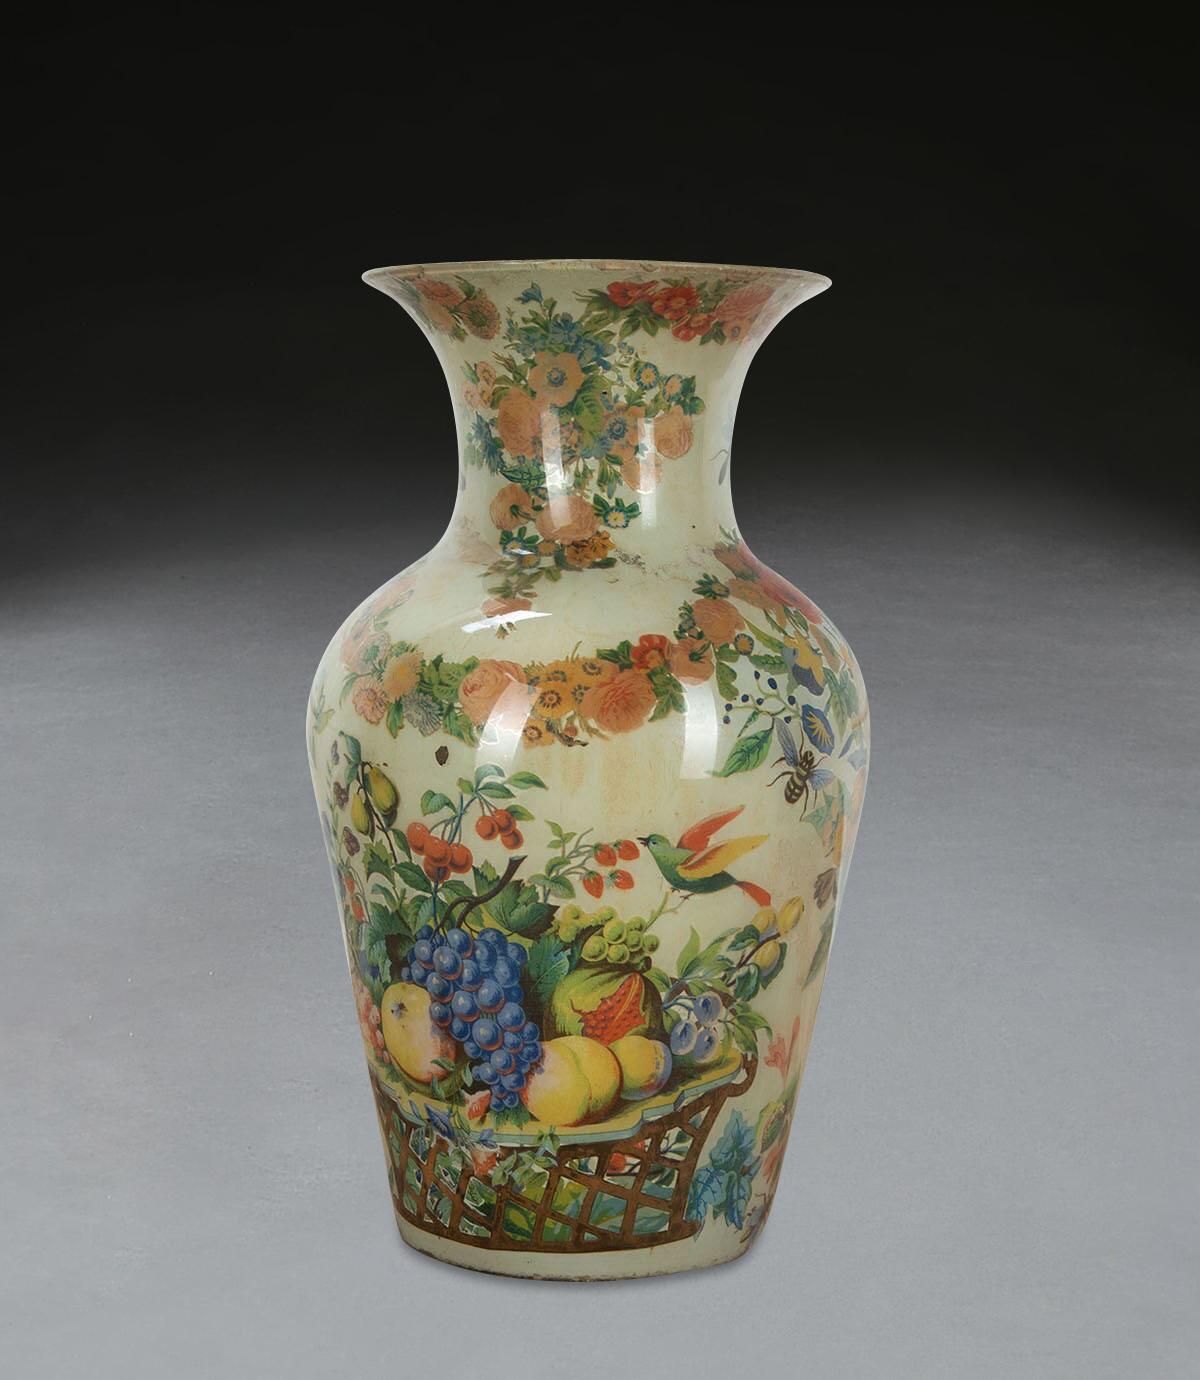 Eine farbenfrohe große Decalcomania-Vase aus dem 19. Jahrhundert mit dem originalen bunten Blumenvordergrund auf einem salbeigrünen Hintergrund. Von guter Größe und formschöner Gestalt. Guter Zustand ohne Chips, Abplatzungen oder Risse. Circa